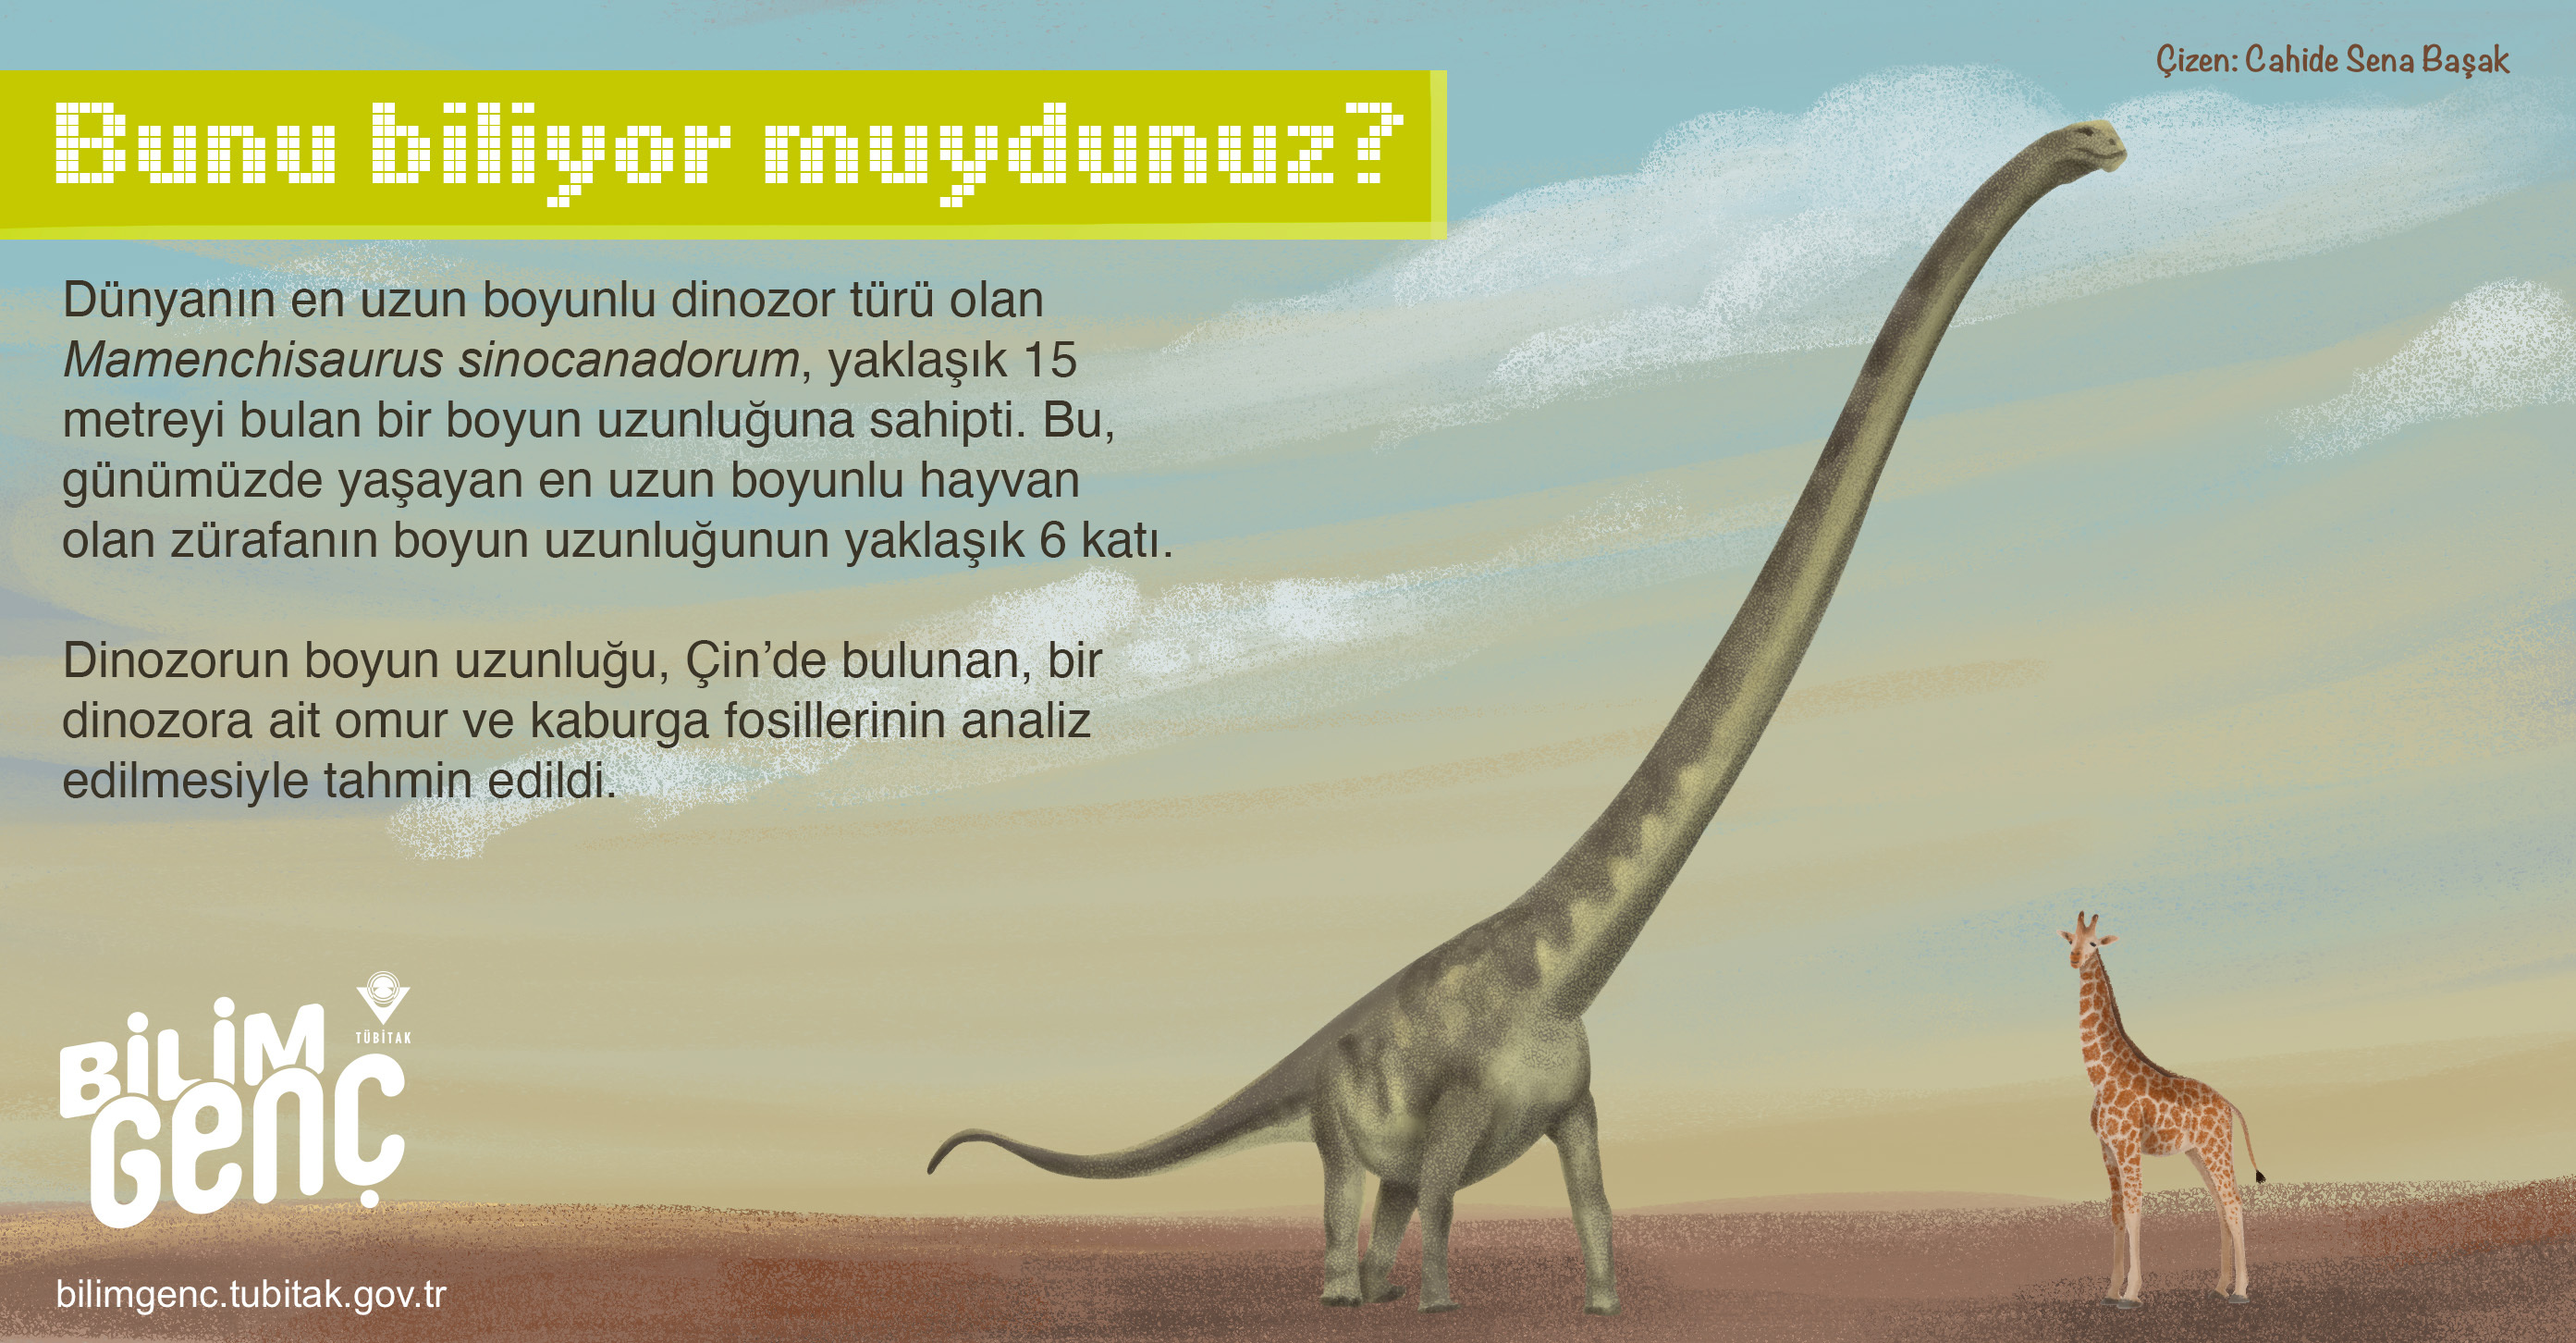 En Uzun Dinozorun Boynu Zürafanınkinden Altı Kat Daha Uzundu